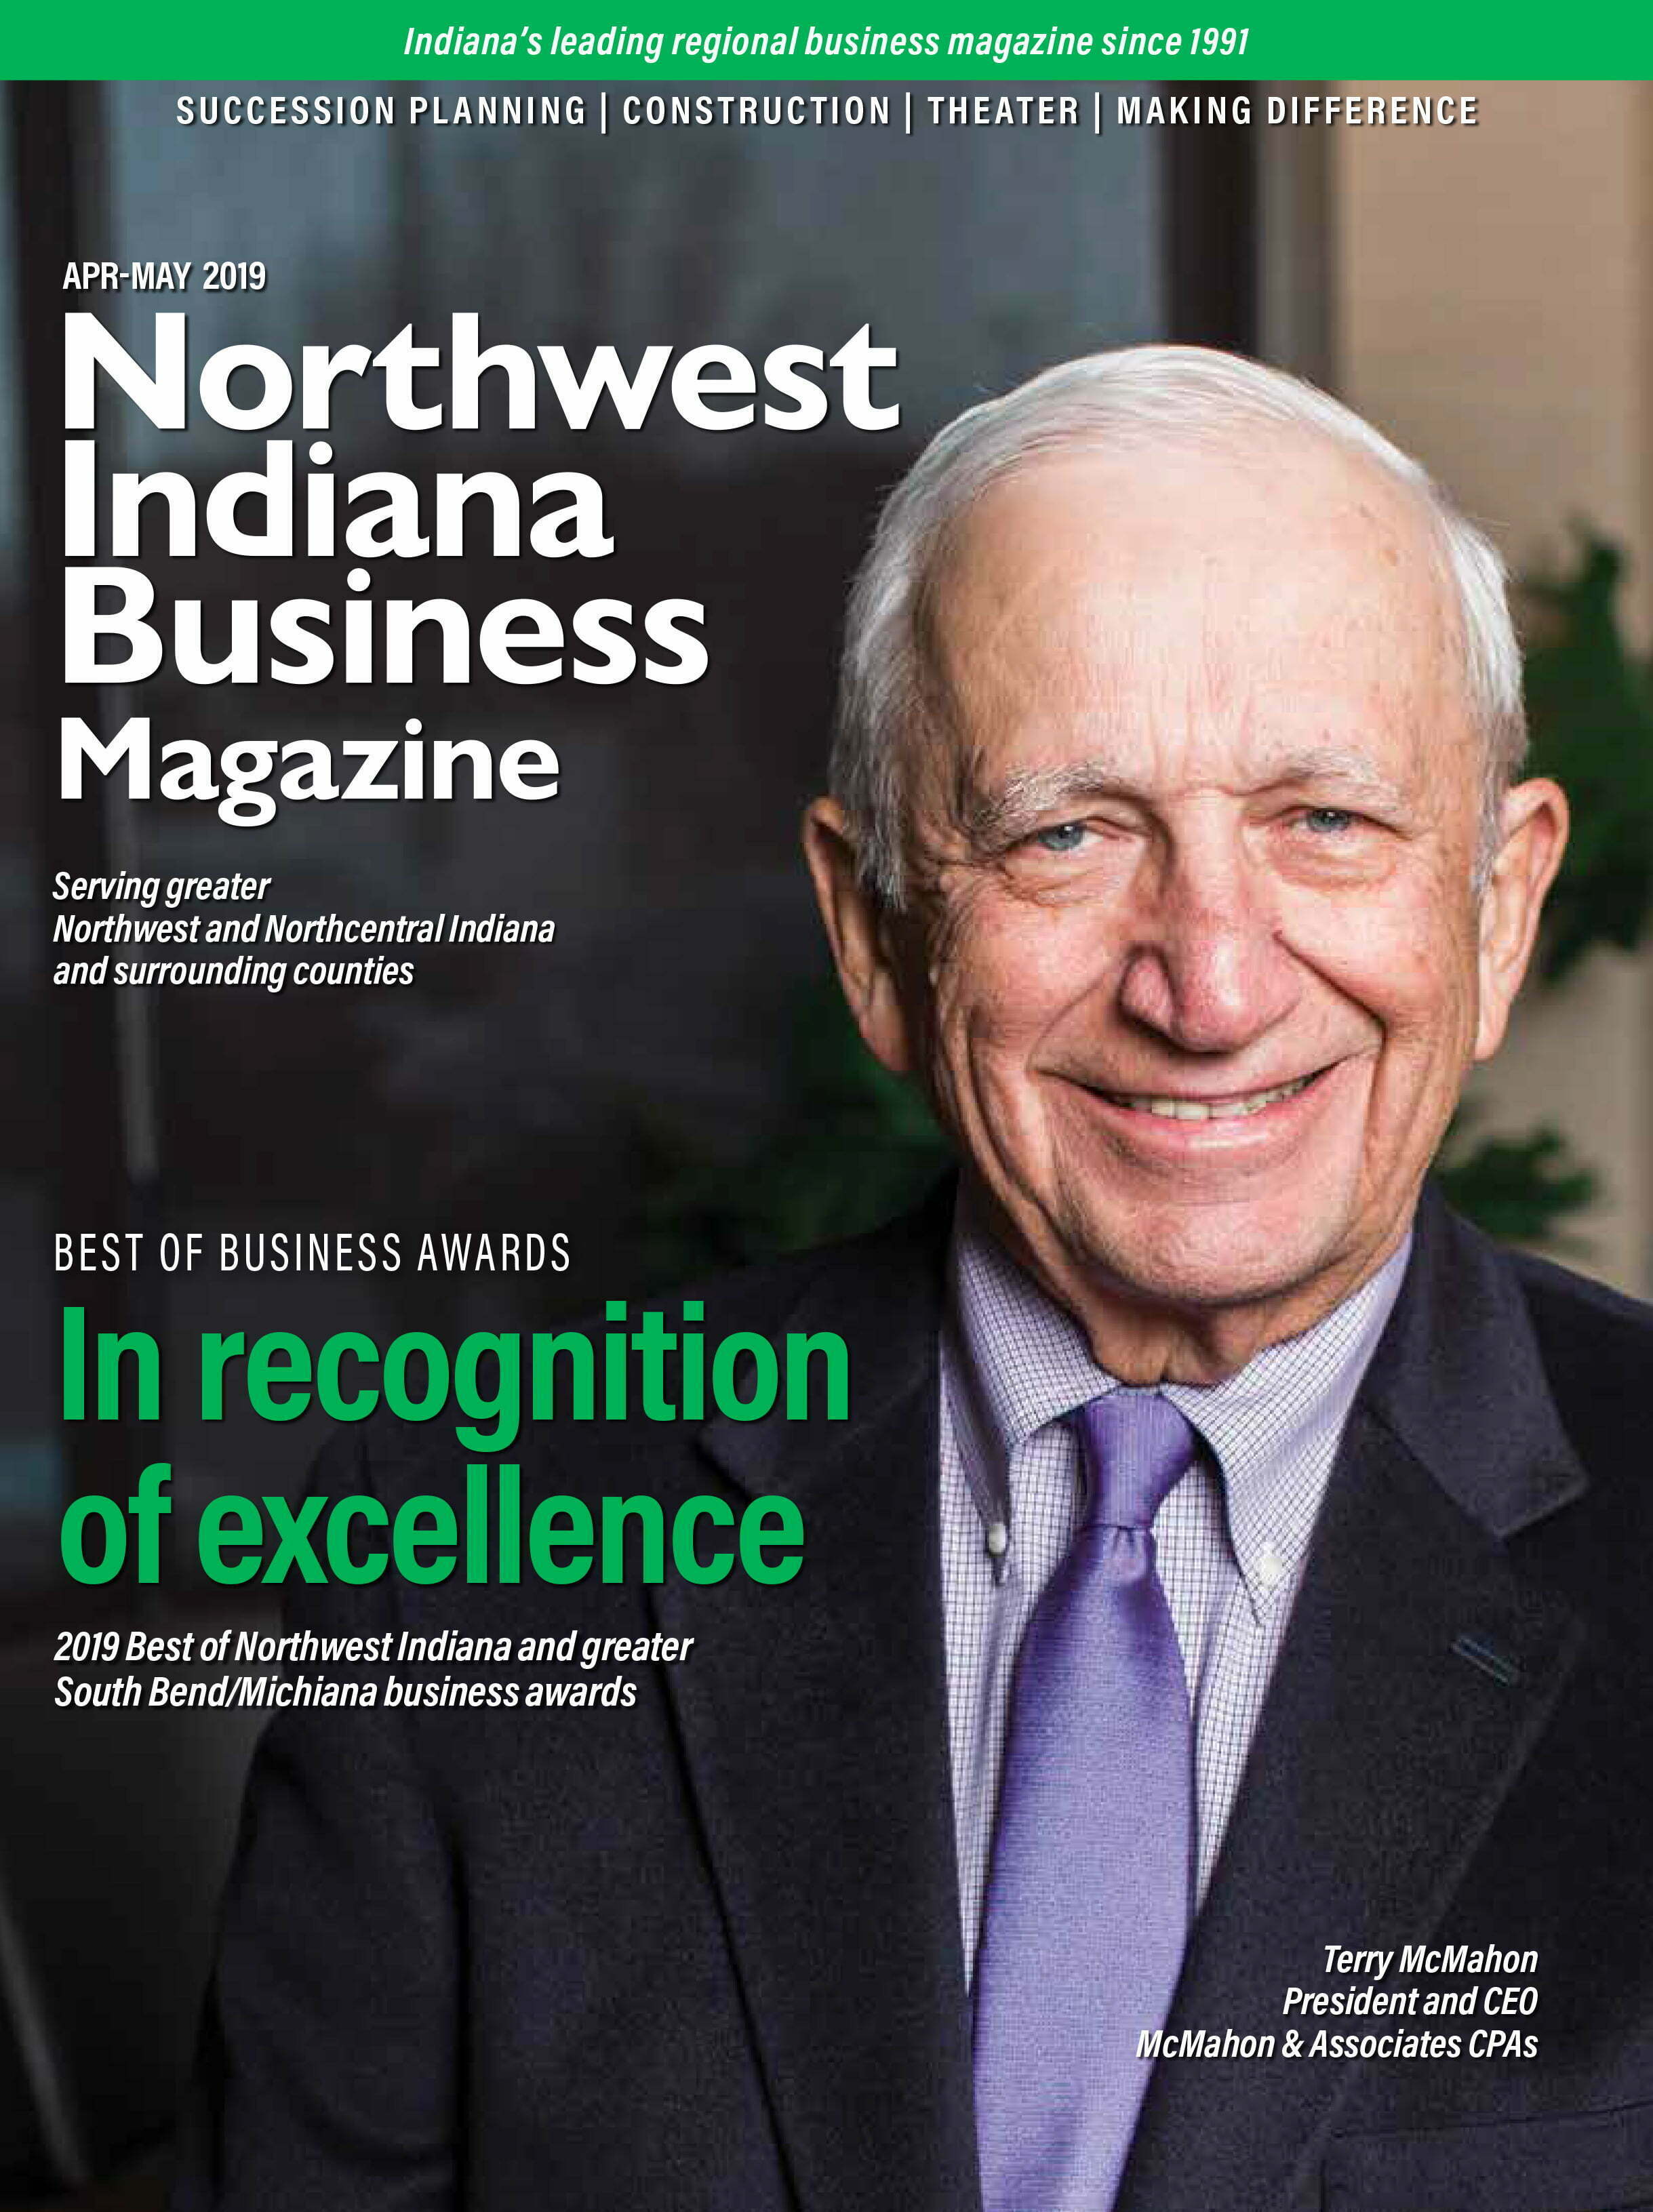 Northwest Indiana Business Magazine Apr-May 2019 issue